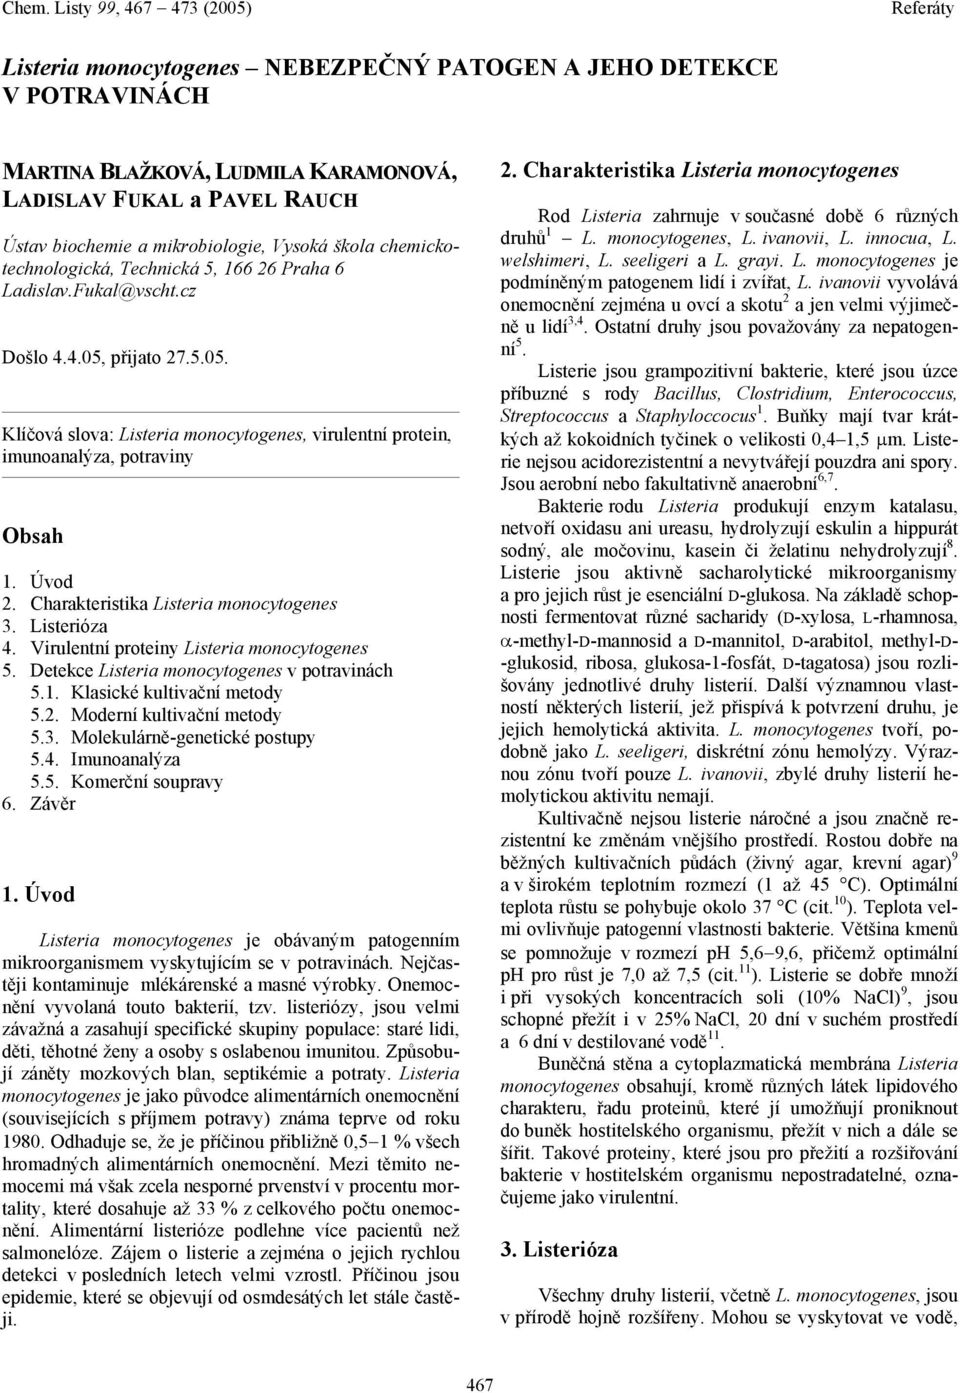 Úvod 2. Charakteristika Listeria monocytogenes 3. Listerióza 4. Virulentní proteiny Listeria monocytogenes 5. Detekce Listeria monocytogenes v potravinách 5.1. Klasické kultivační metody 5.2. Moderní kultivační metody 5.